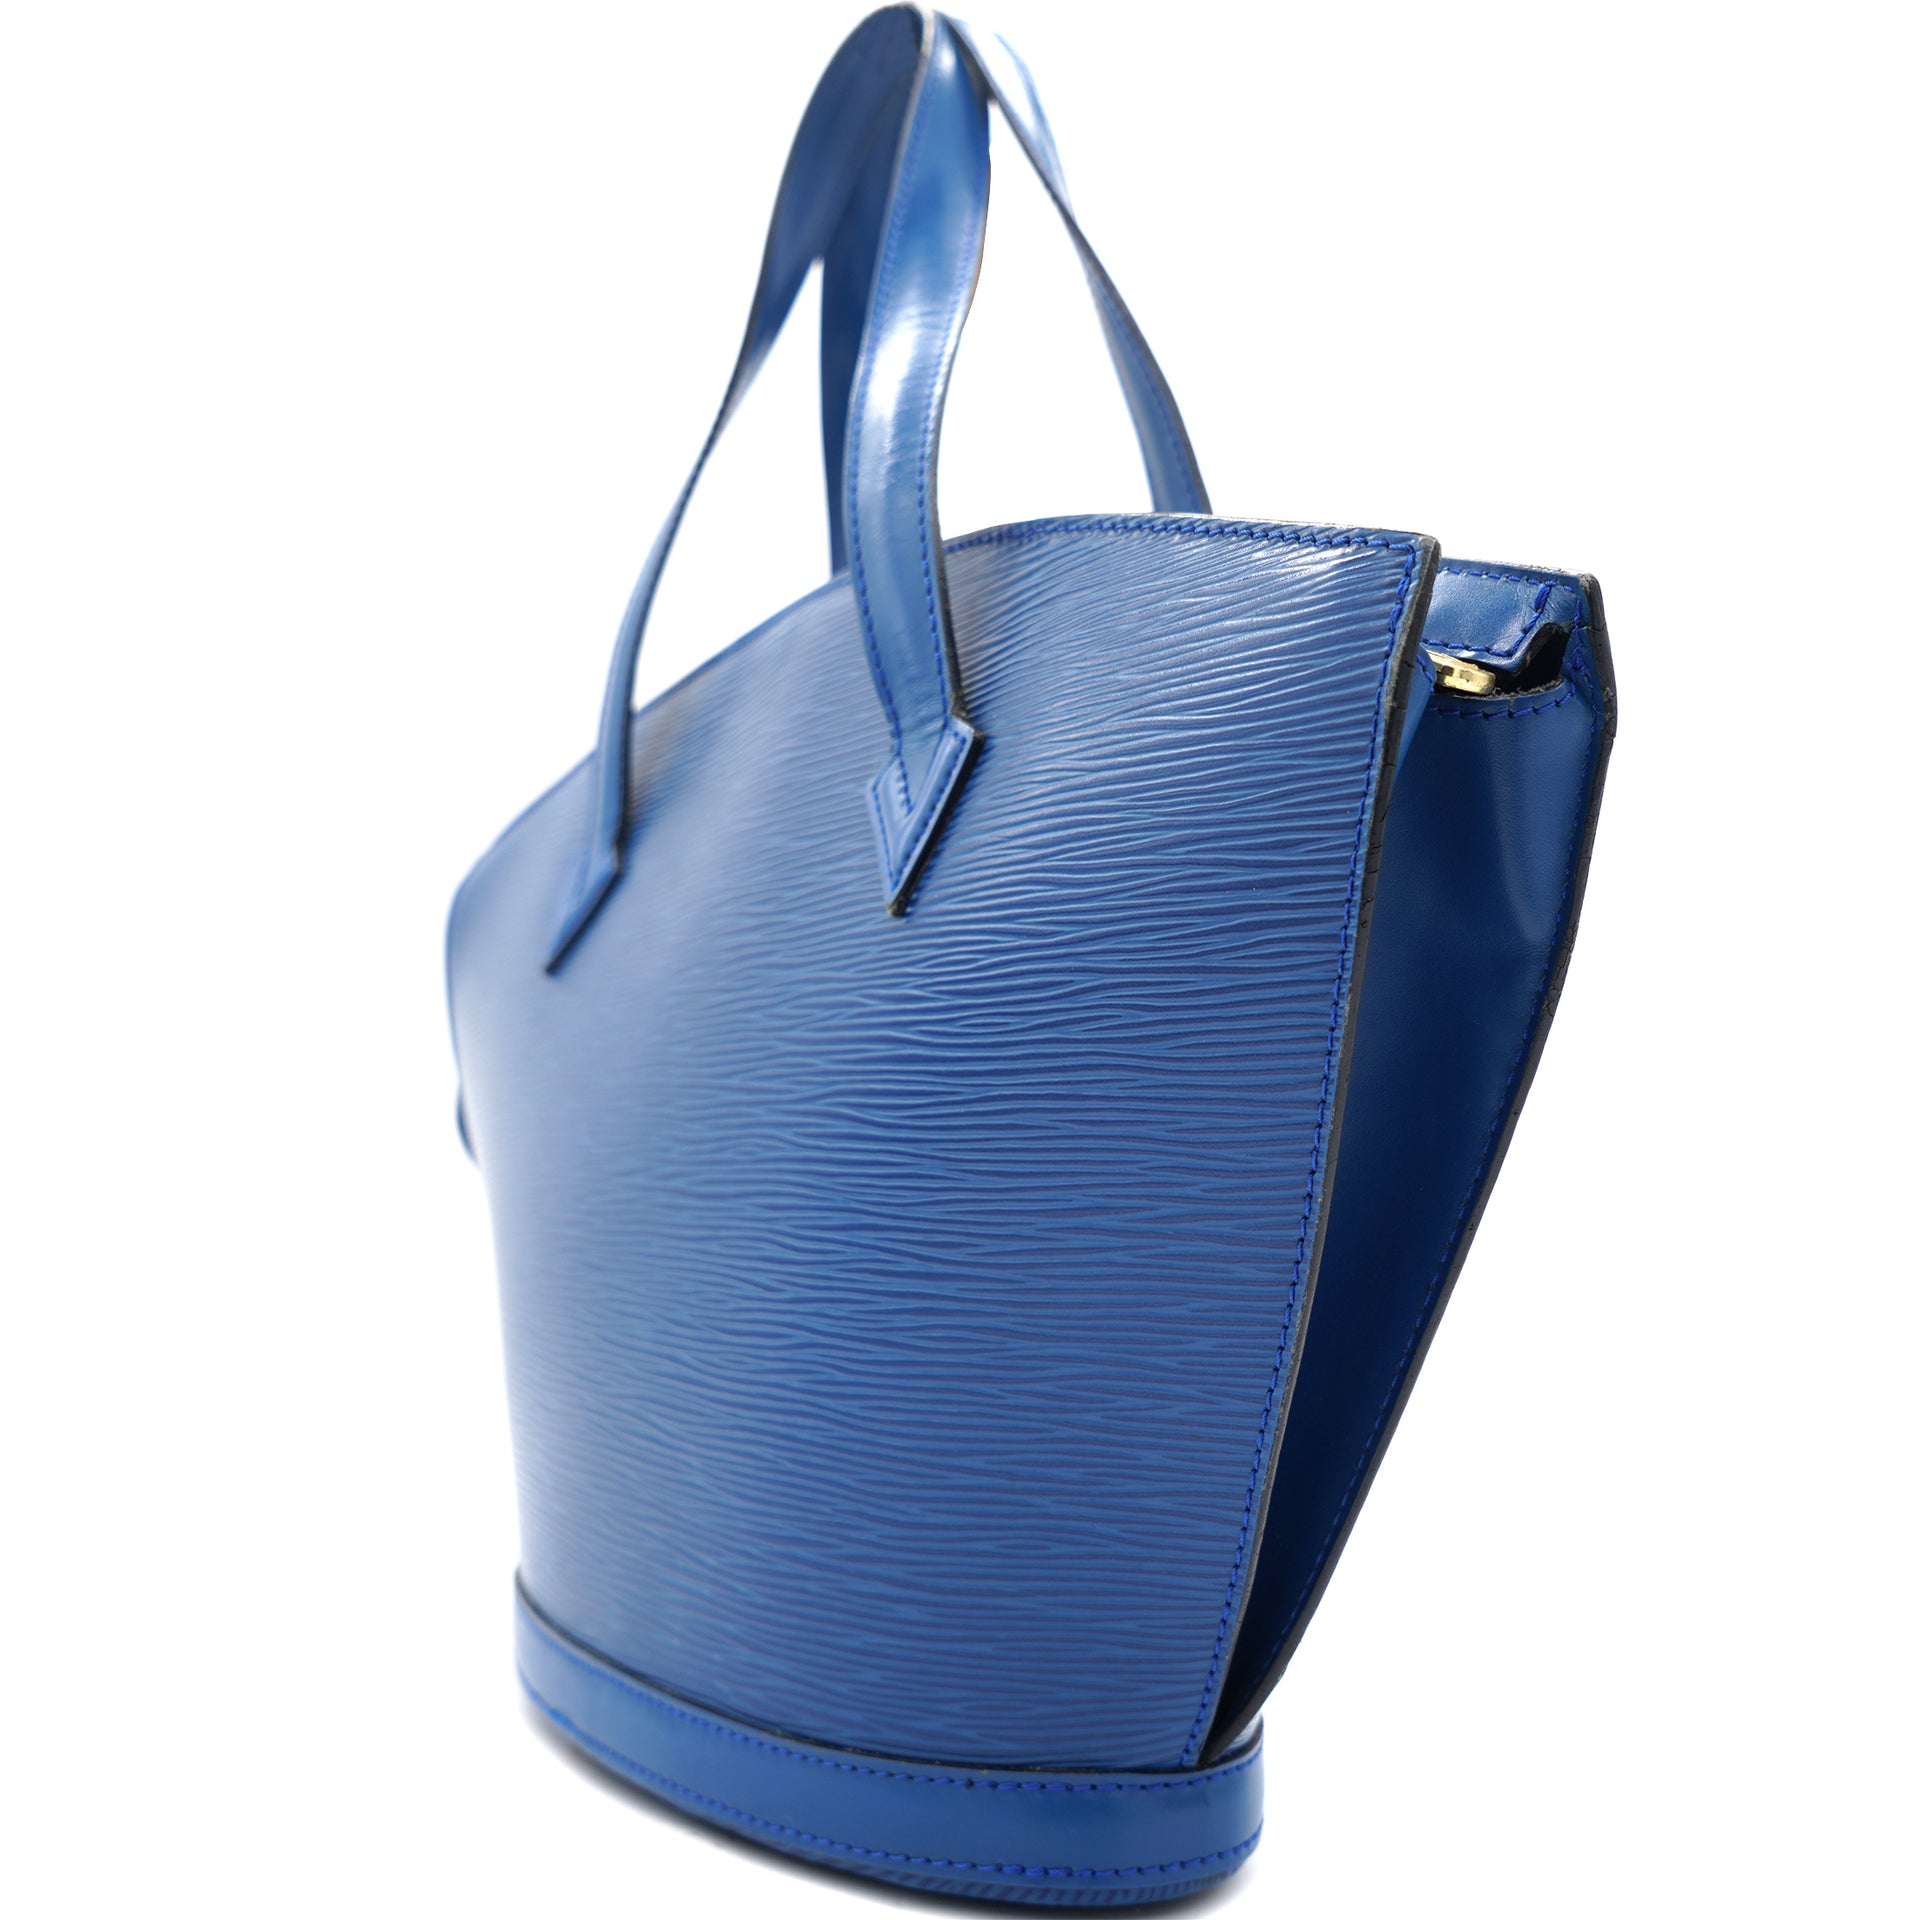 Louis Vuitton - Authenticated Saint Jacques Handbag - Leather Blue Plain for Women, Very Good Condition